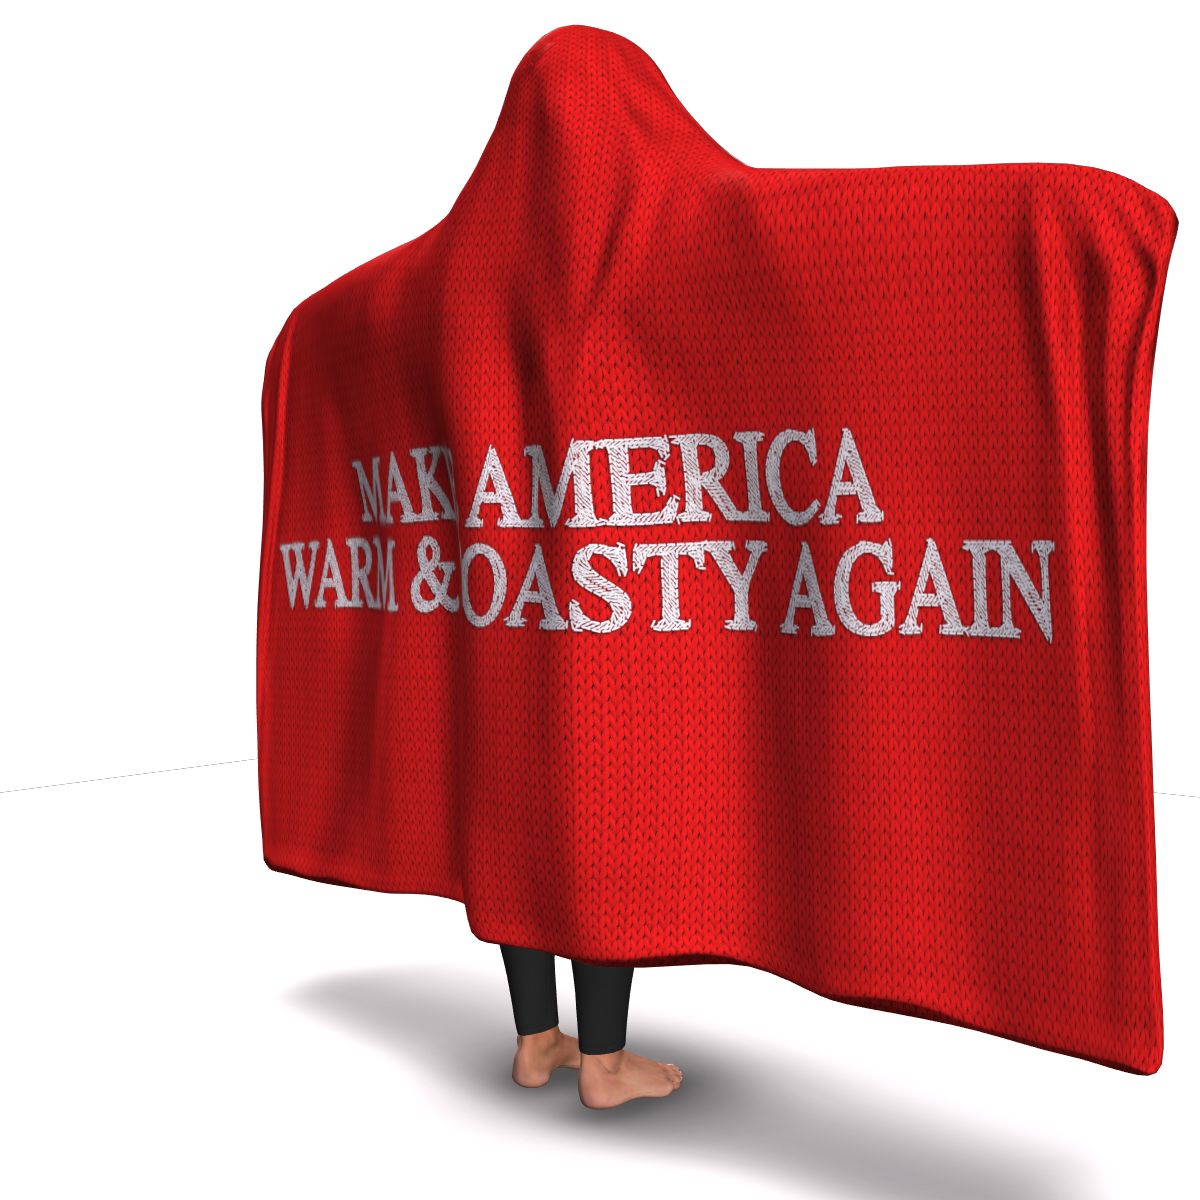 Make America Warm & Toasty Again Hooded Blanket